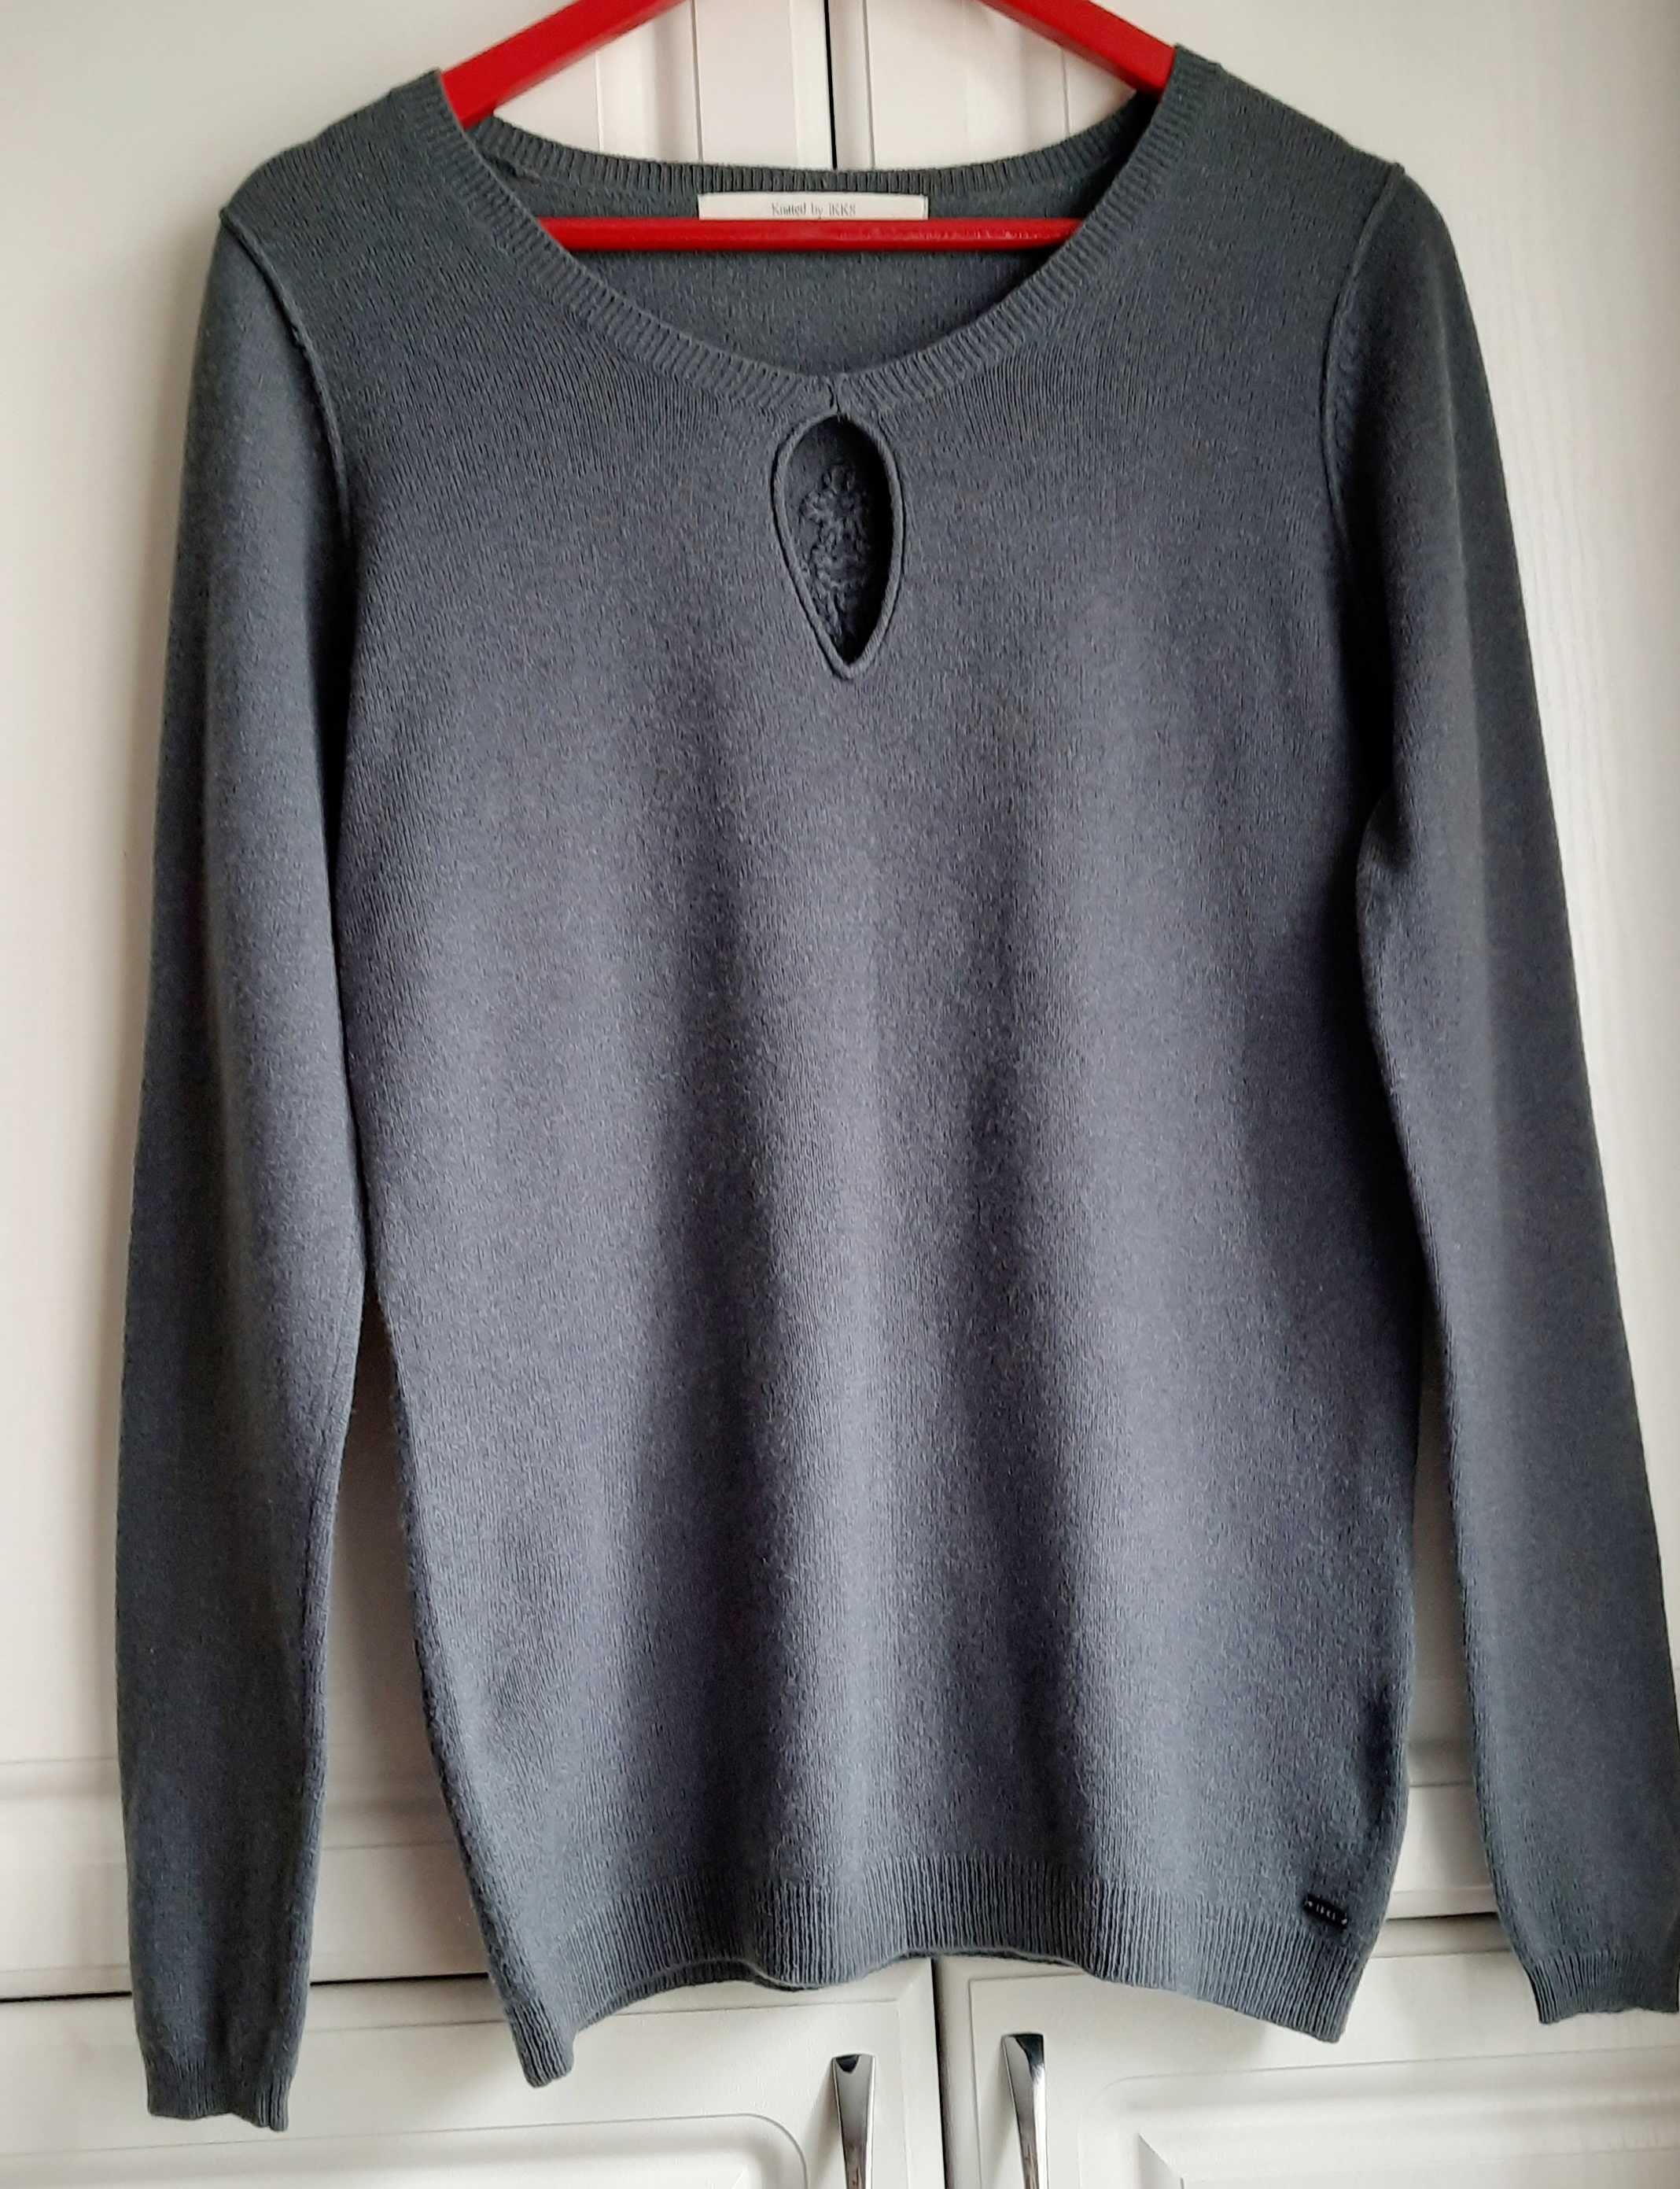 Пуловер L XL 48 50 свитер H&M хаки кашемир жилет женский